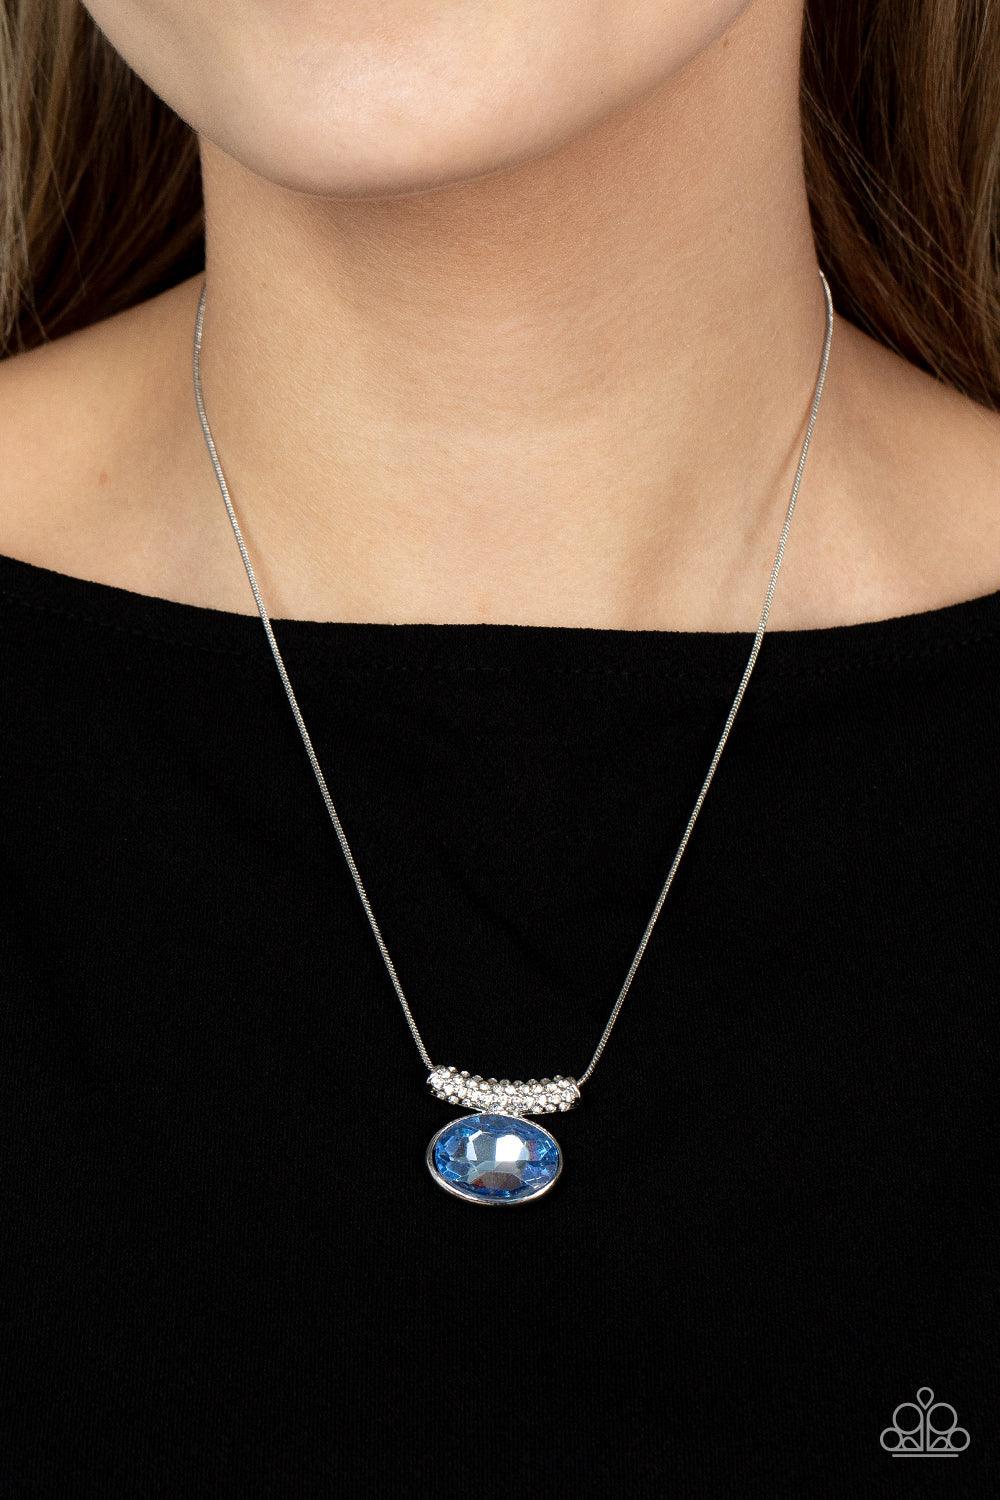 Pristinely Prestigious Blue Necklace - Jewelry by Bretta